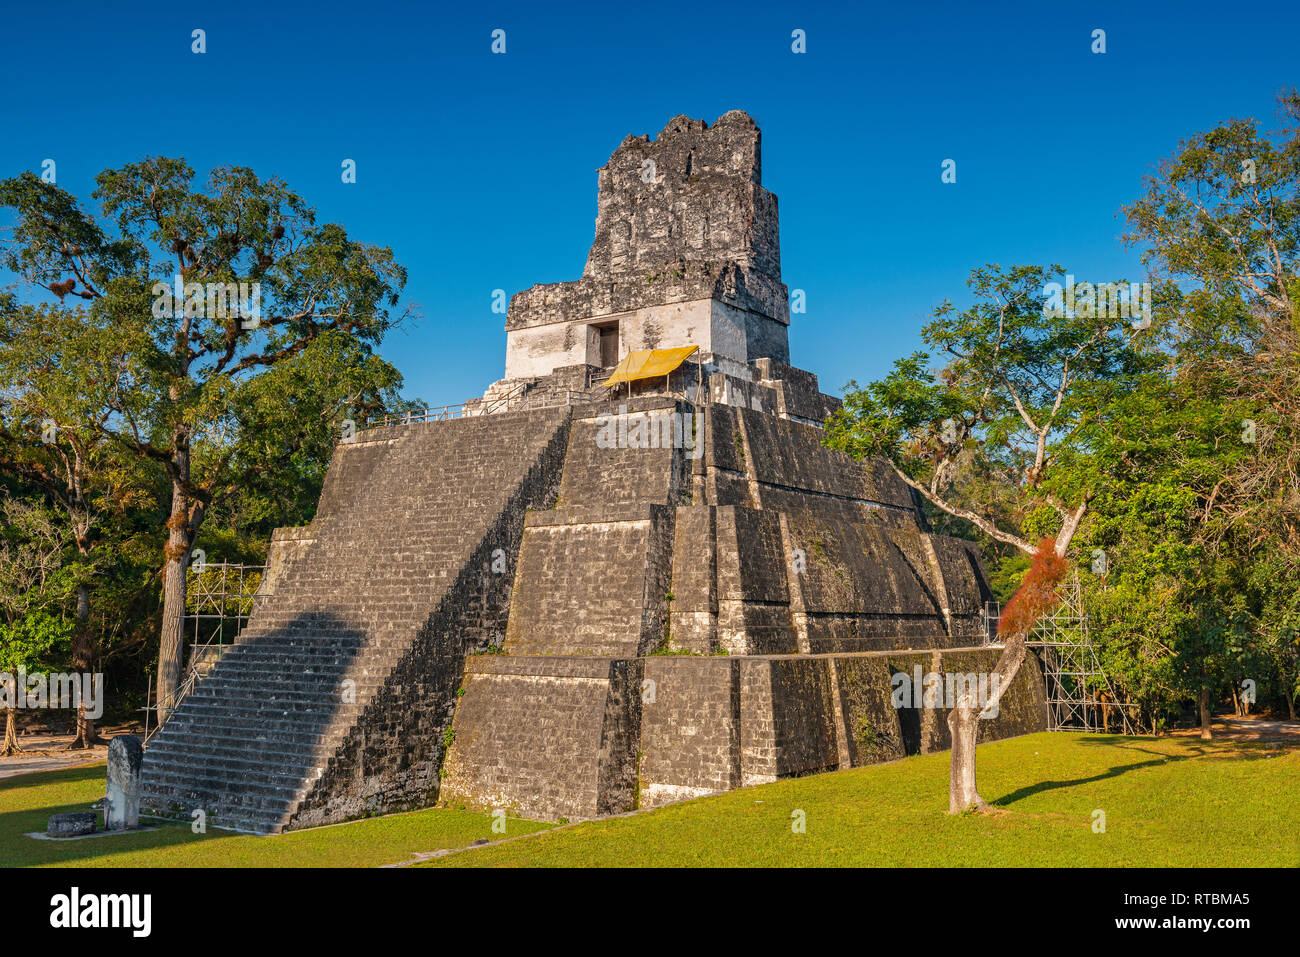 Place principale du complexe archéologique de Tikal Maya avec le Temple Pyramide II milieu de la forêt tropicale du Petén près de la ville de Flores, Guatemala. Banque D'Images